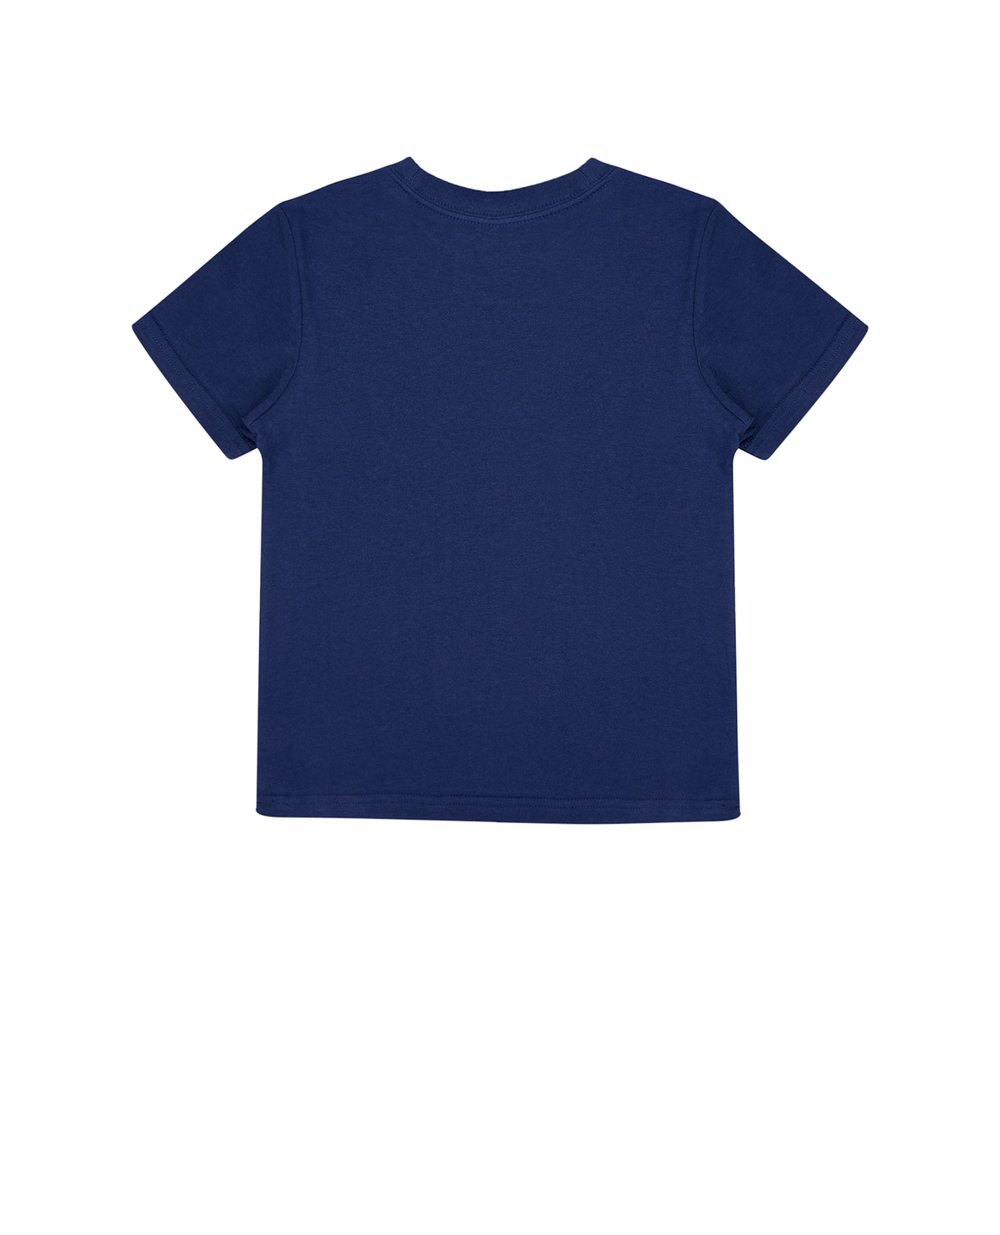 Детская футболка Polo Bear Polo Ralph Lauren Kids 323853828018, синий цвет • Купить в интернет-магазине Kameron